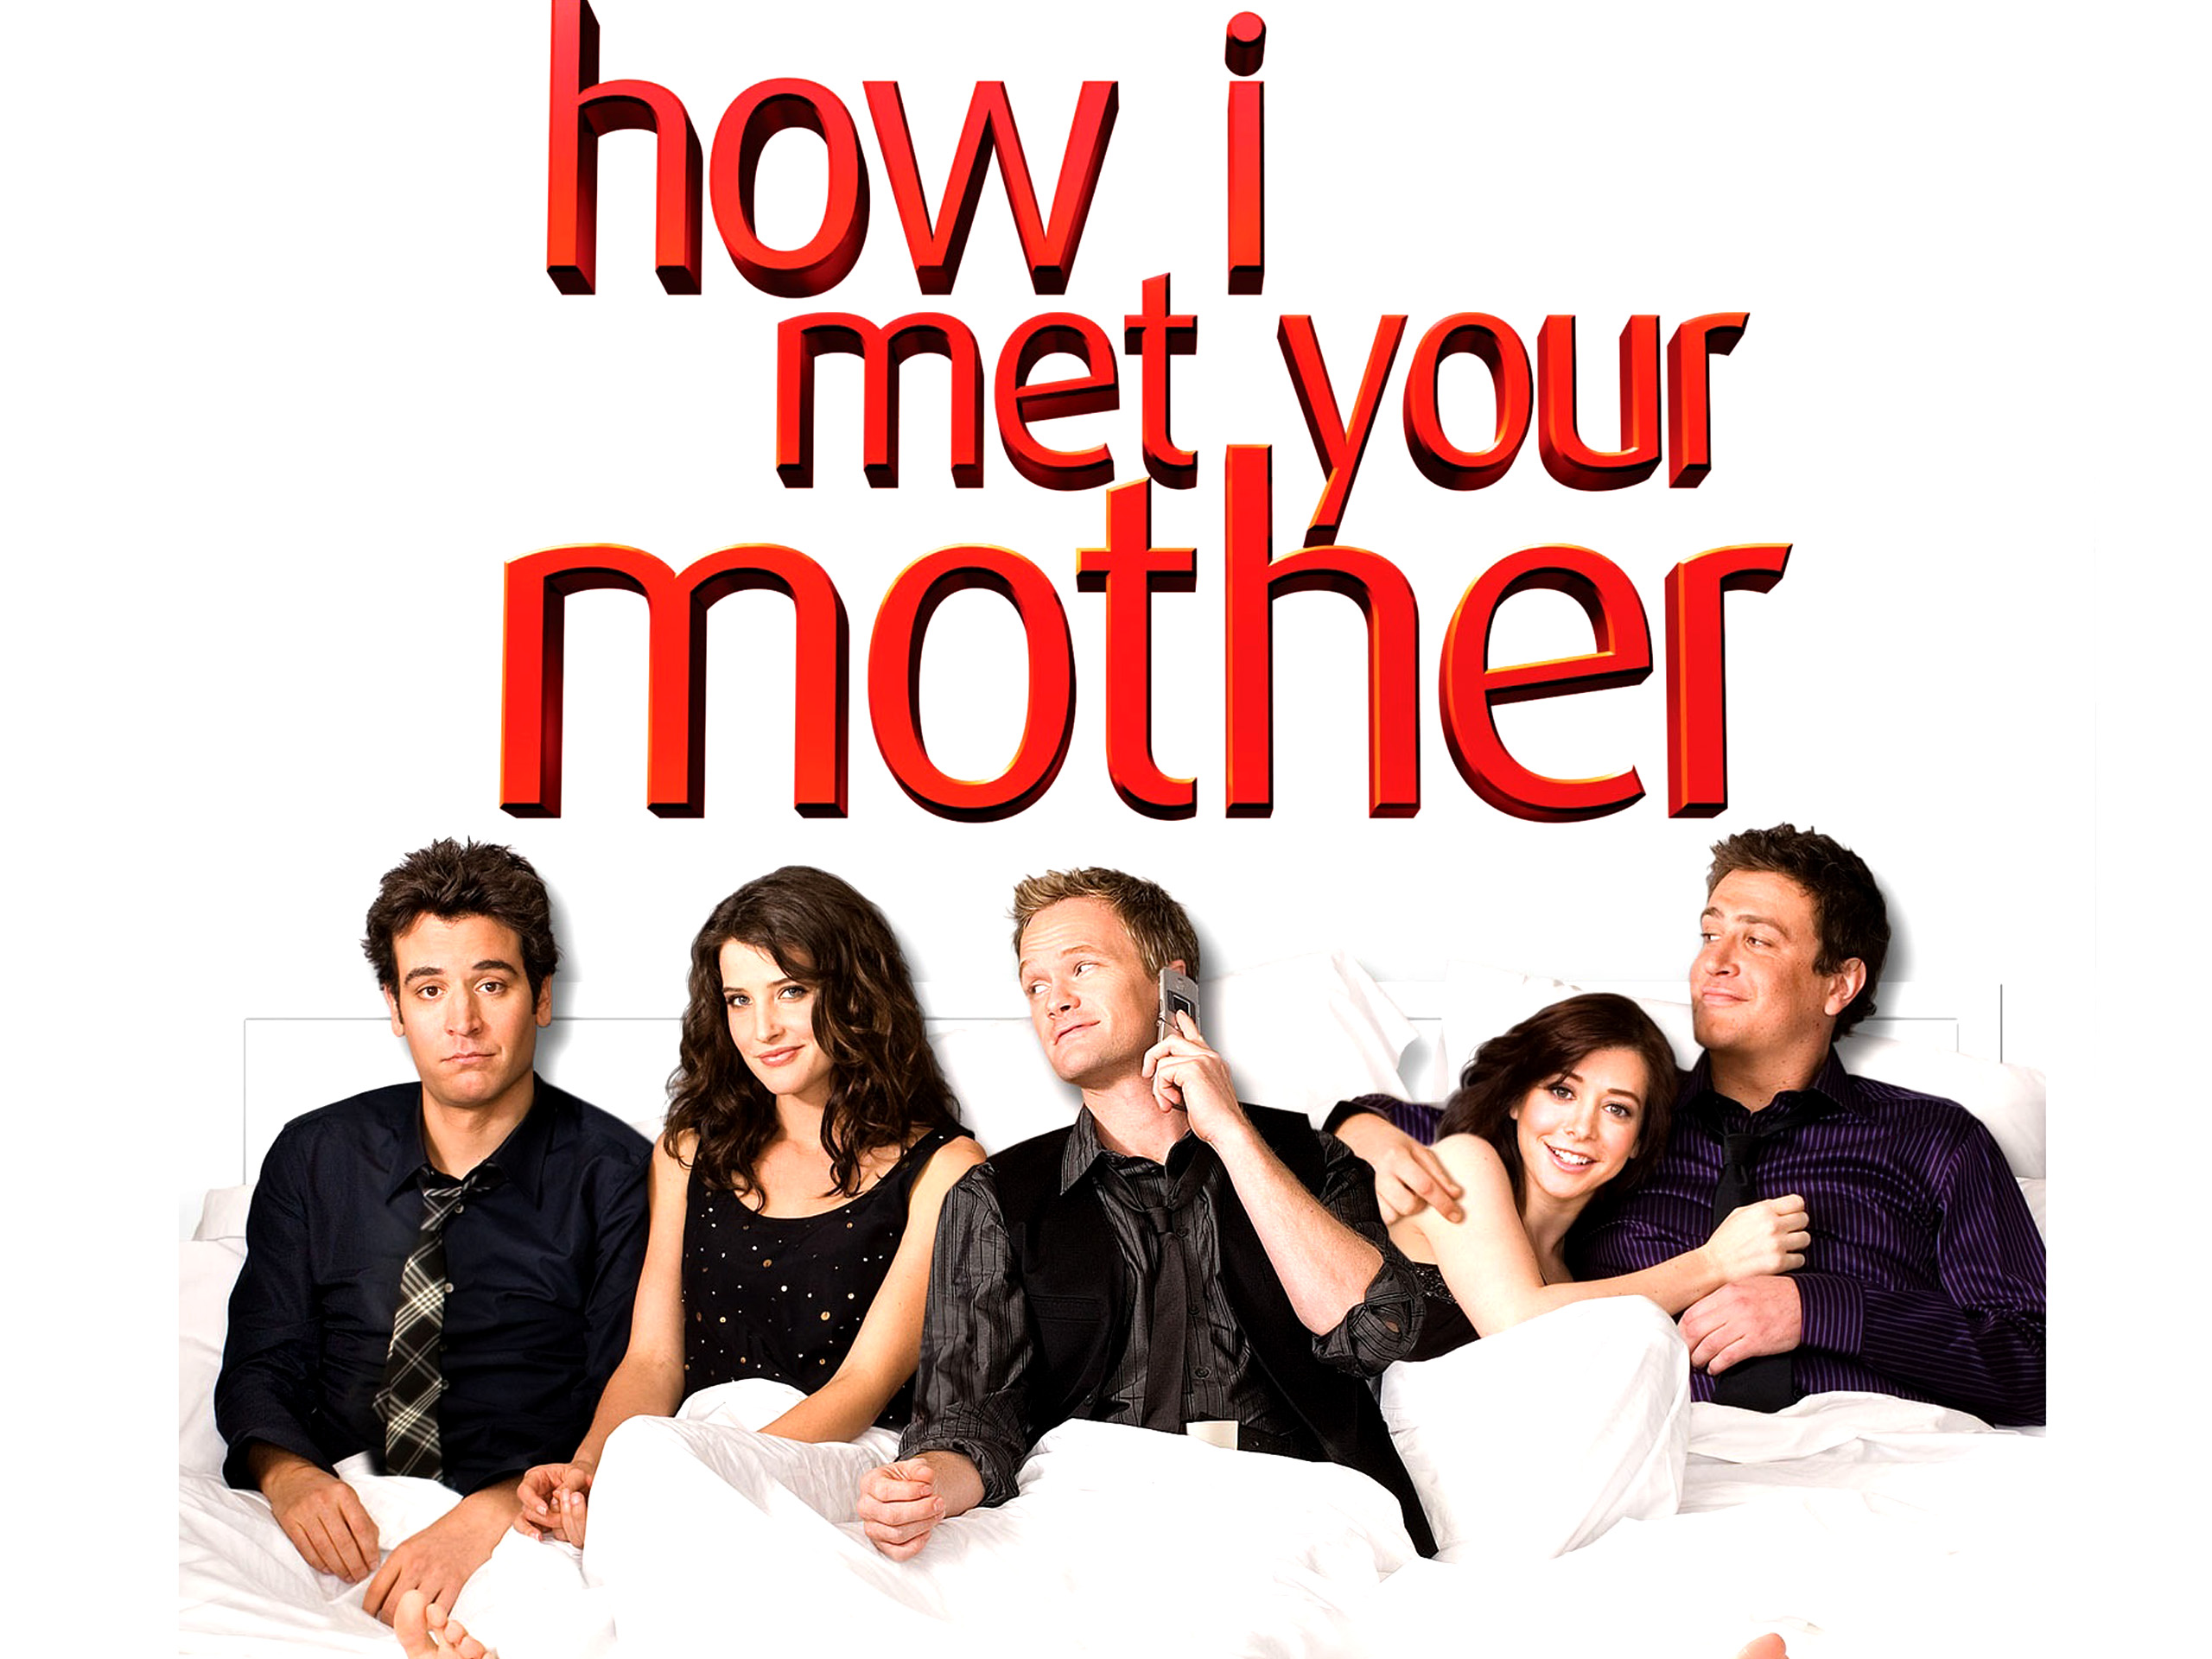 Série How I Met Your Mother – Sinopse e Como Assistir Online e TV